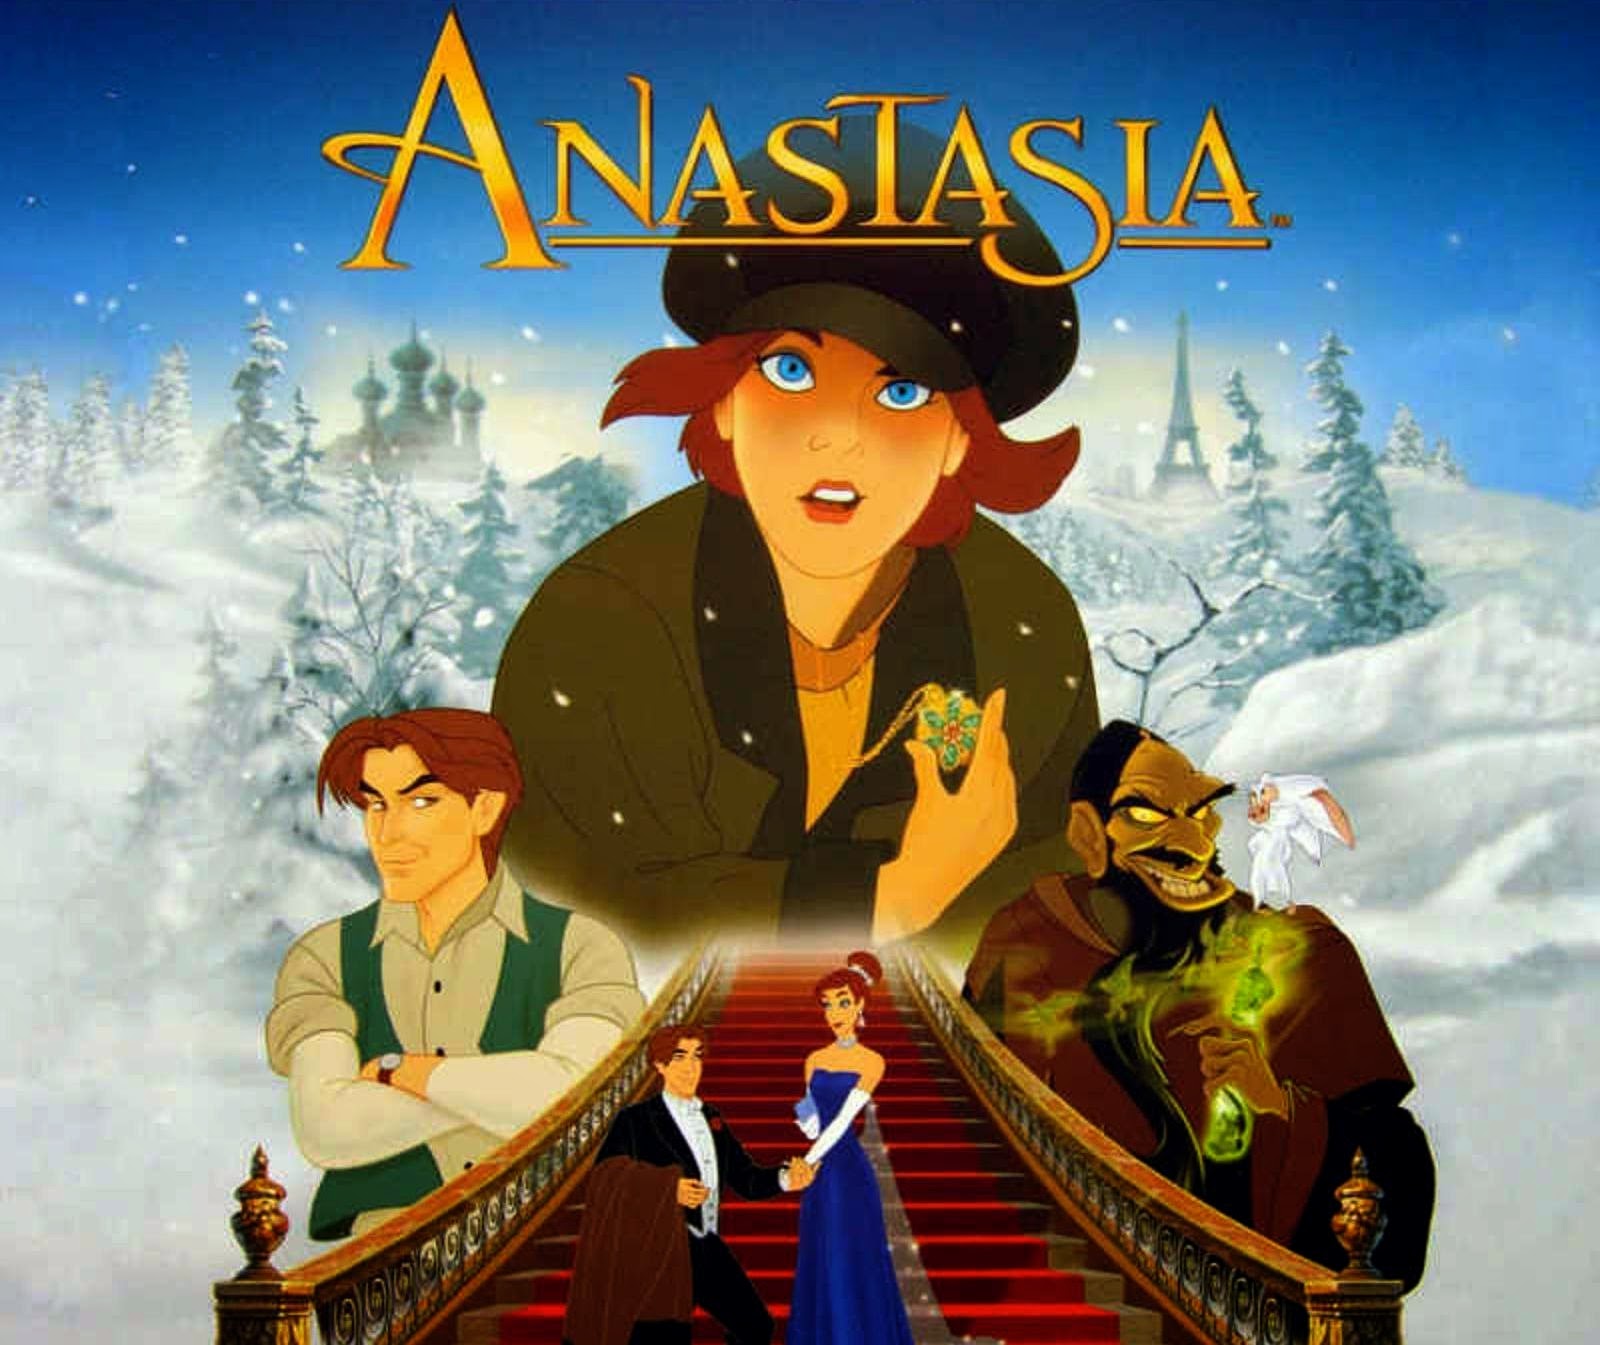 Anastasia Film D Animation Pour Enfants Sorti Au Cinéma En 1998